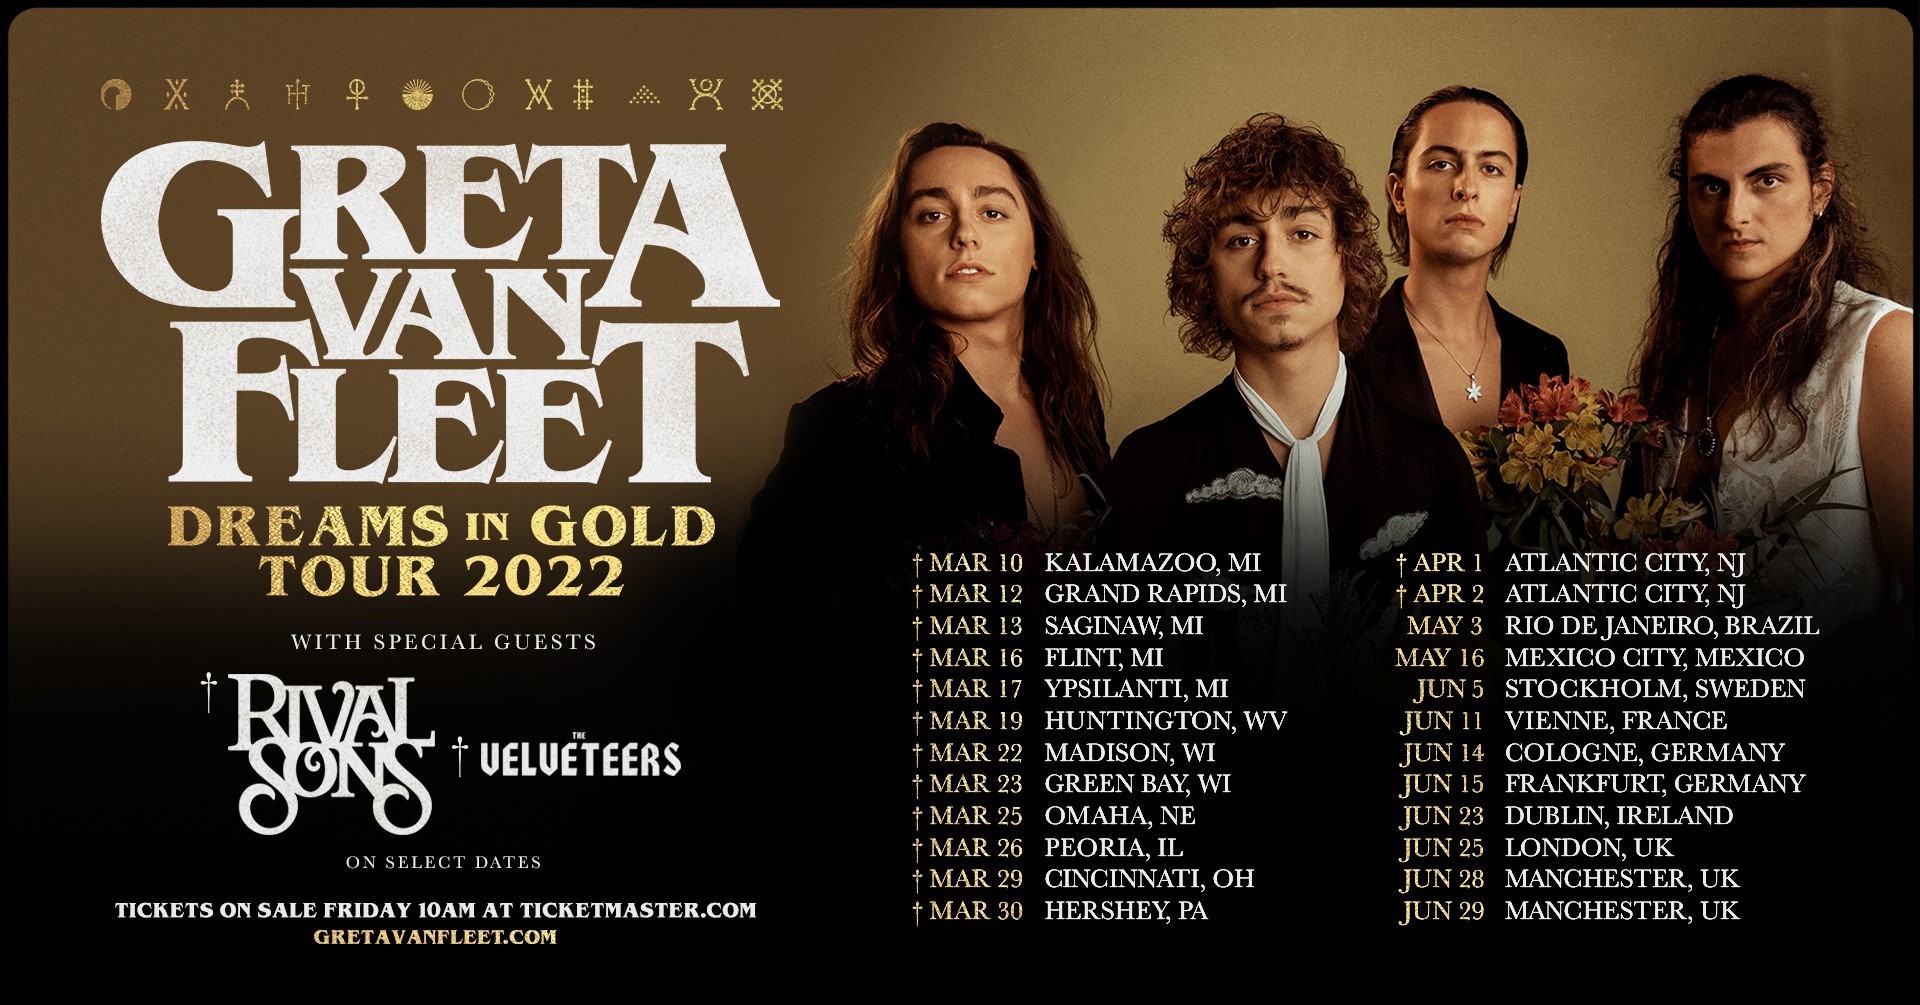 greta van fleet concert tour dates